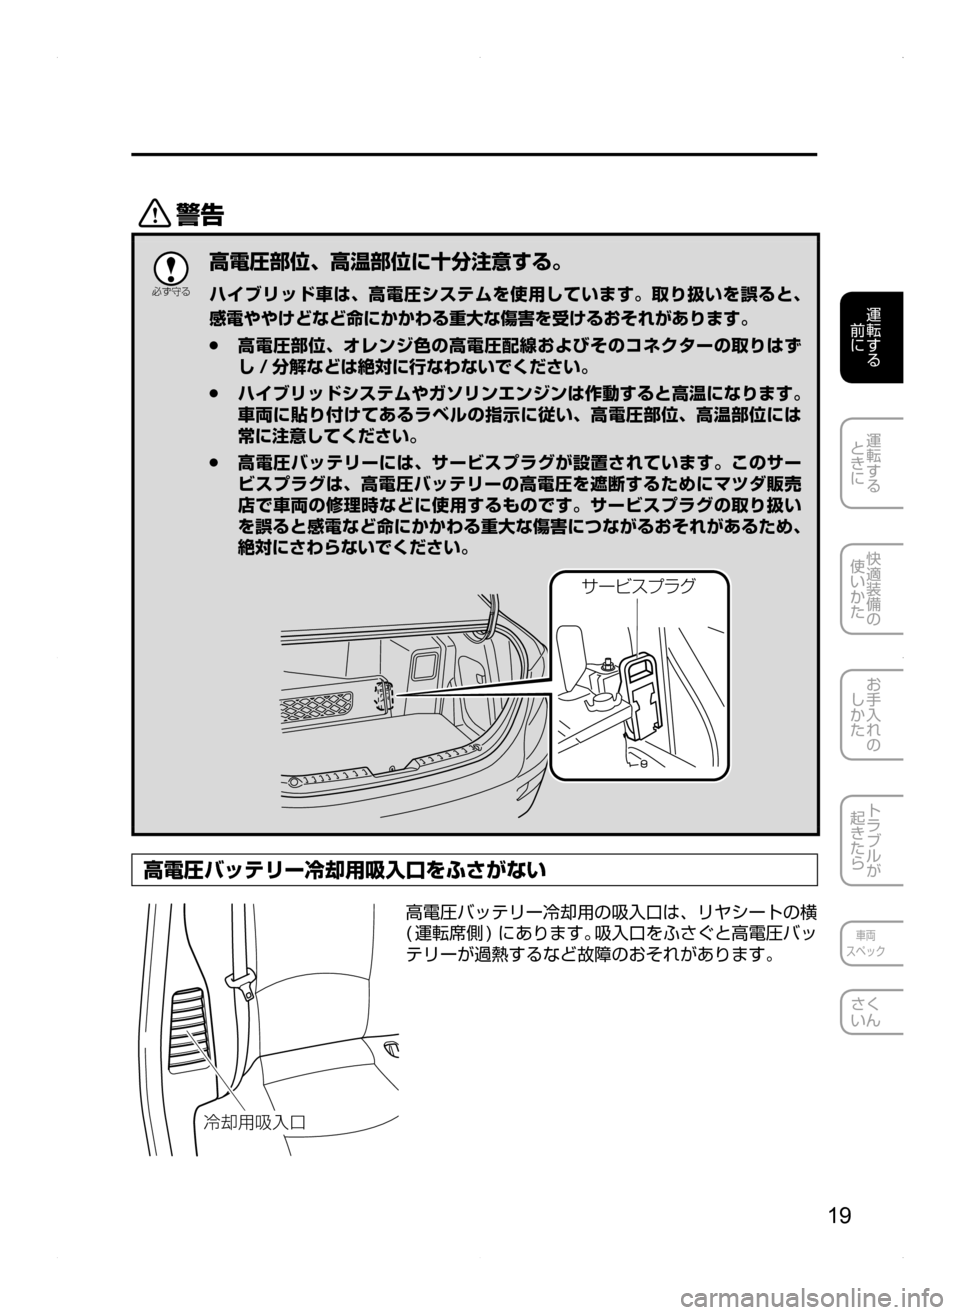 MAZDA MODEL AXELA HYBRID 2014  アクセラハイブリッド｜取扱説明書 (in Japanese) 19
運転する
.
前に
運転する
.
ときに
快適装備の
使いかた
お手入れの
しかた
トラブルが
起きたら
車両
スペック
さく
いん
/

žc 	”
高電圧部�